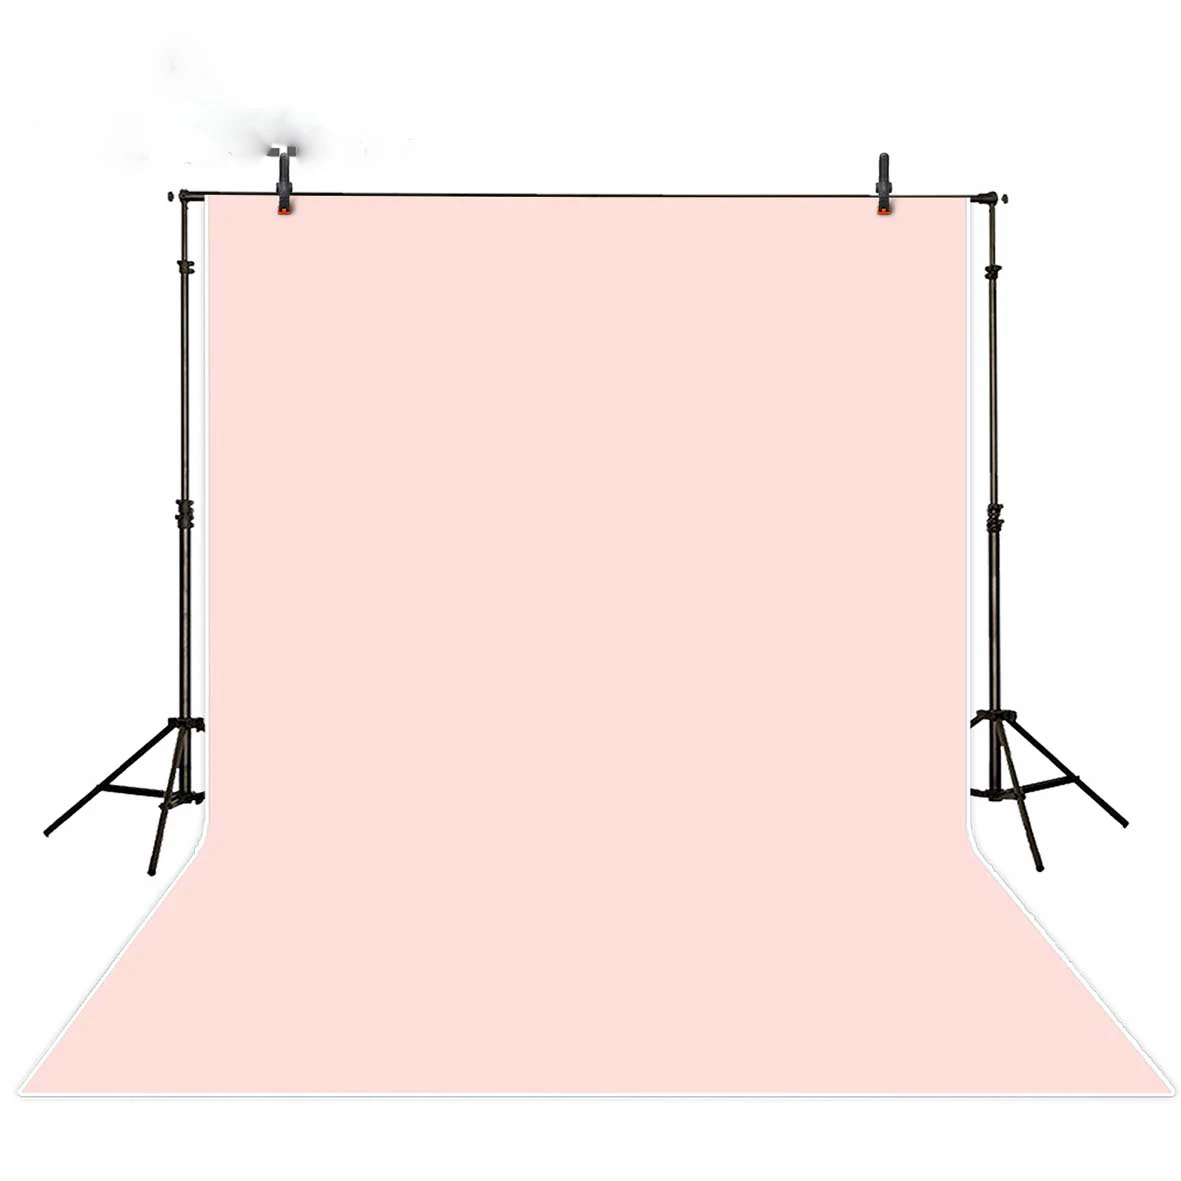 MEHOFOTO фон для фотосъемки однотонный пастельный розовый чистый цвет фоны для портретной фотостудии фотобудка фотографа